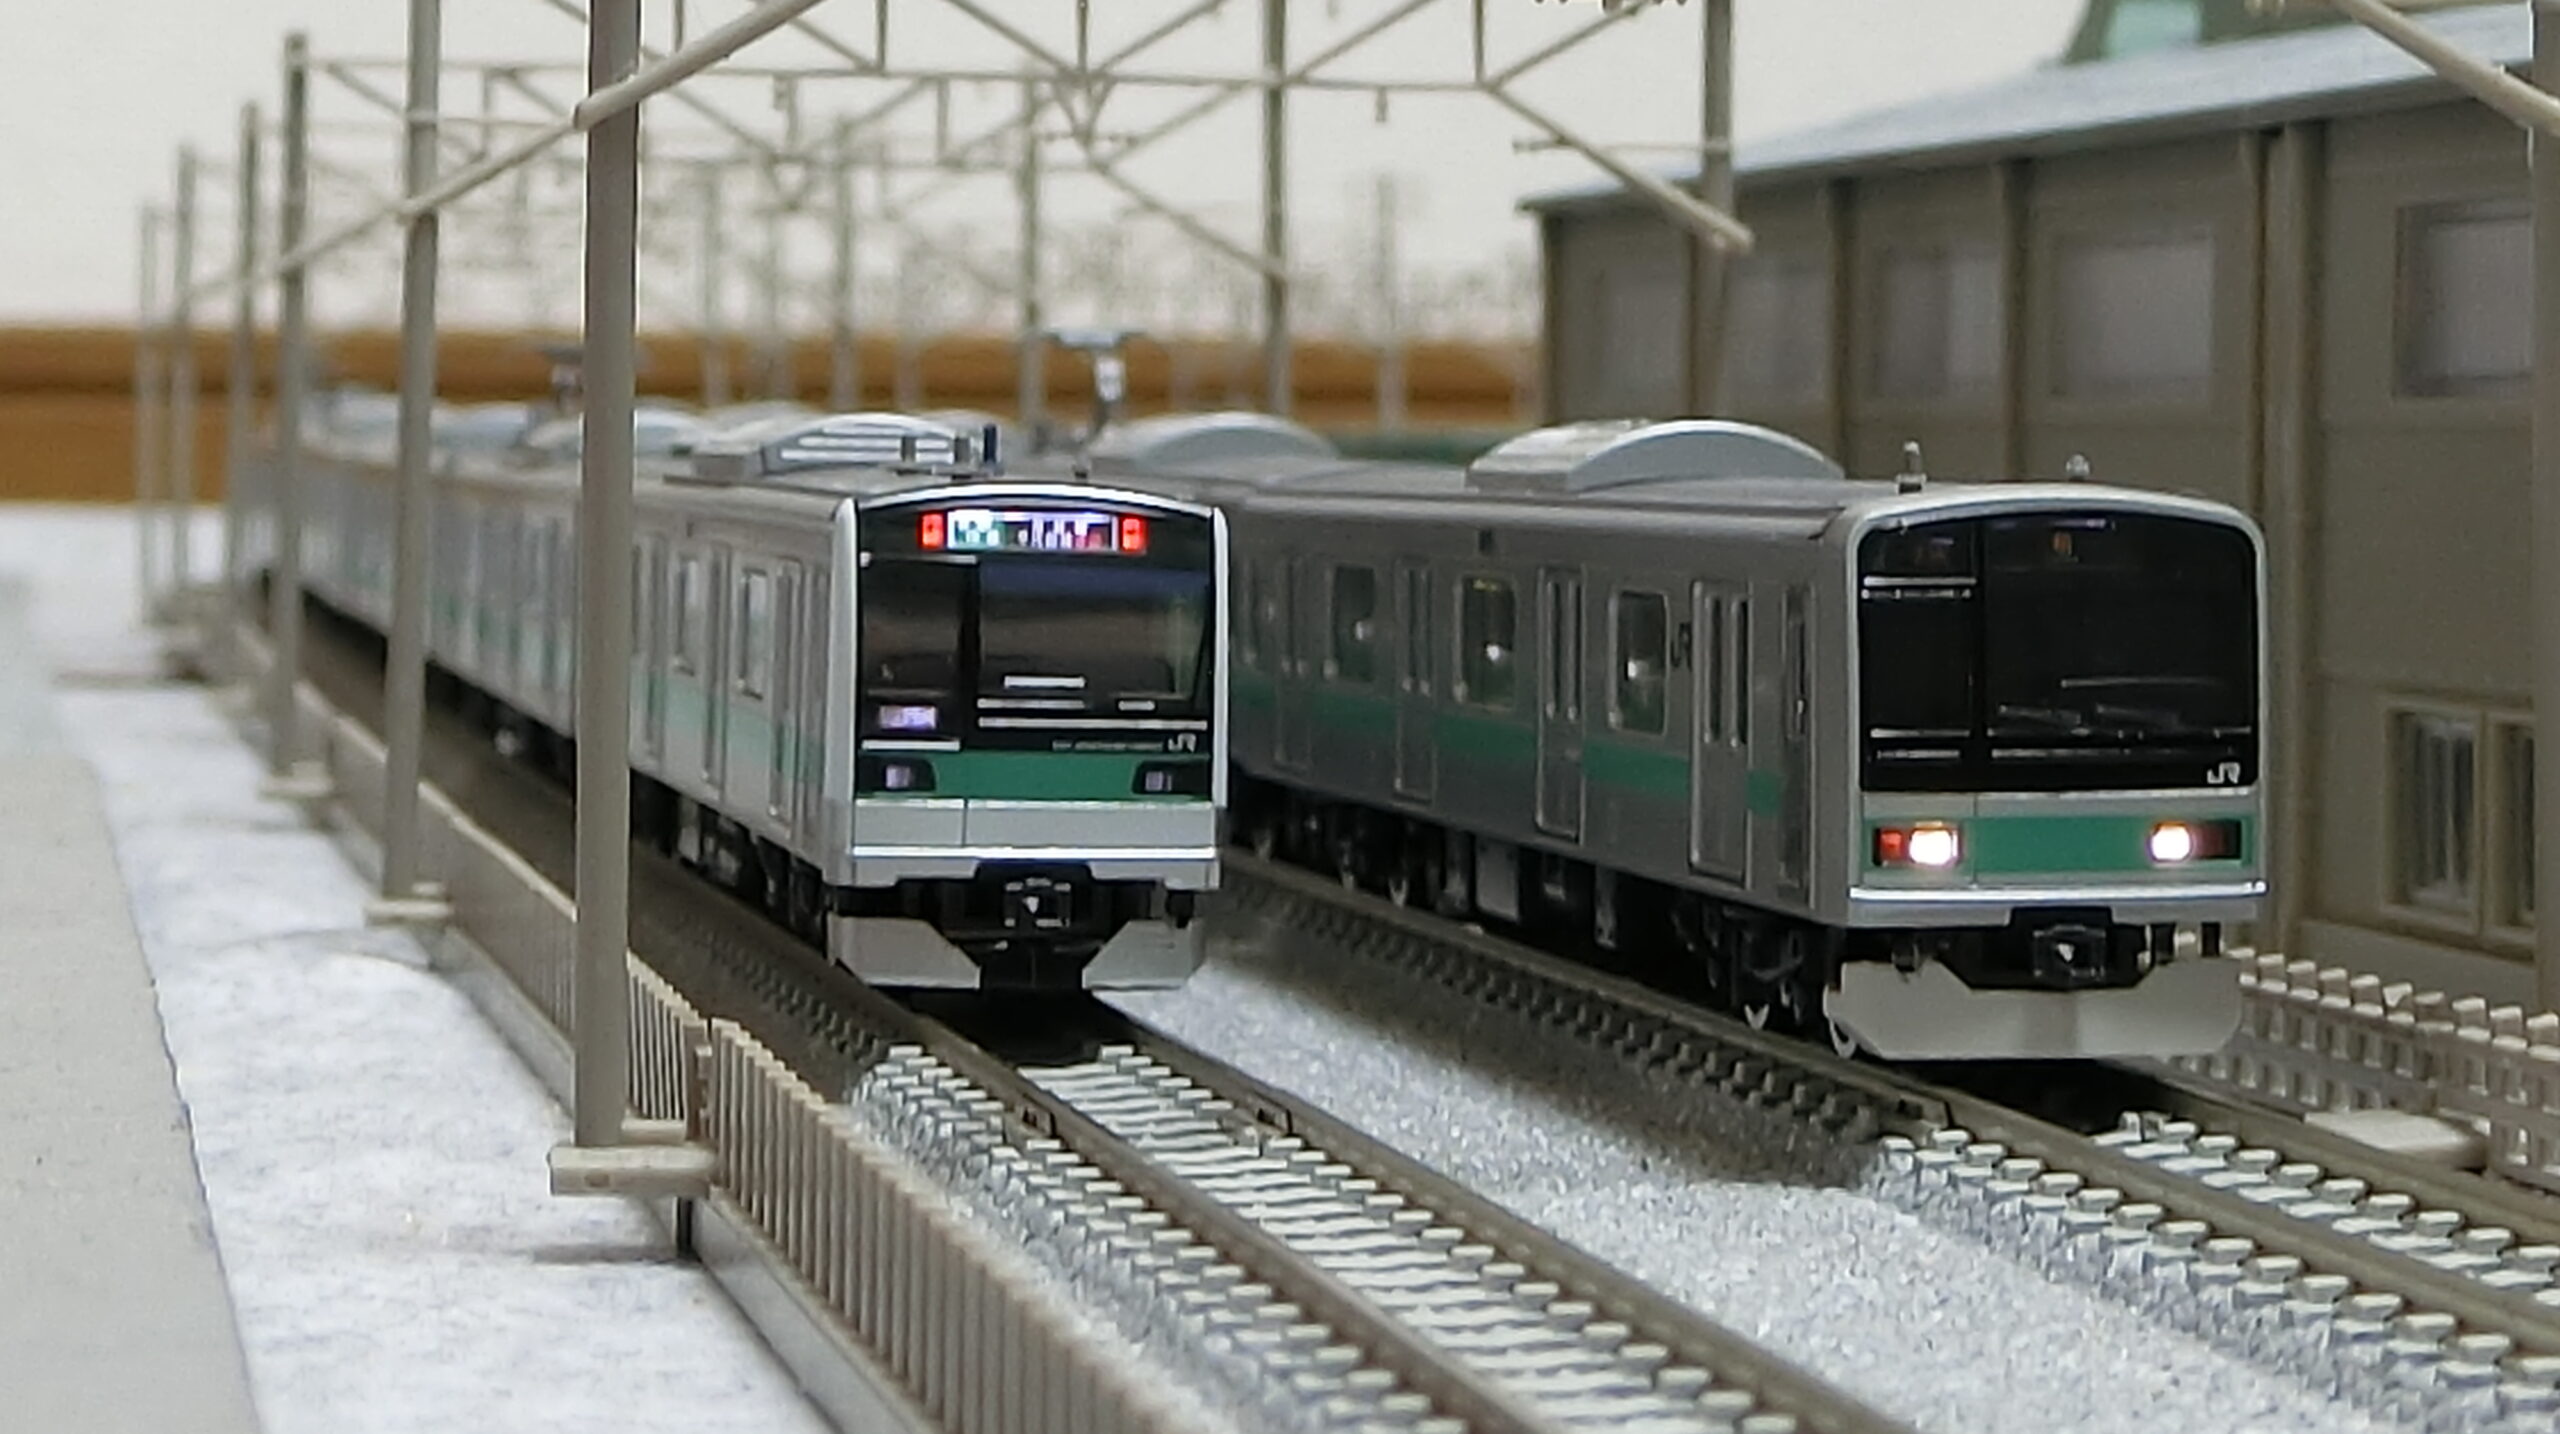 トミックス 209 1000系 (ありがとう209系1000代) 10両セット - 鉄道模型